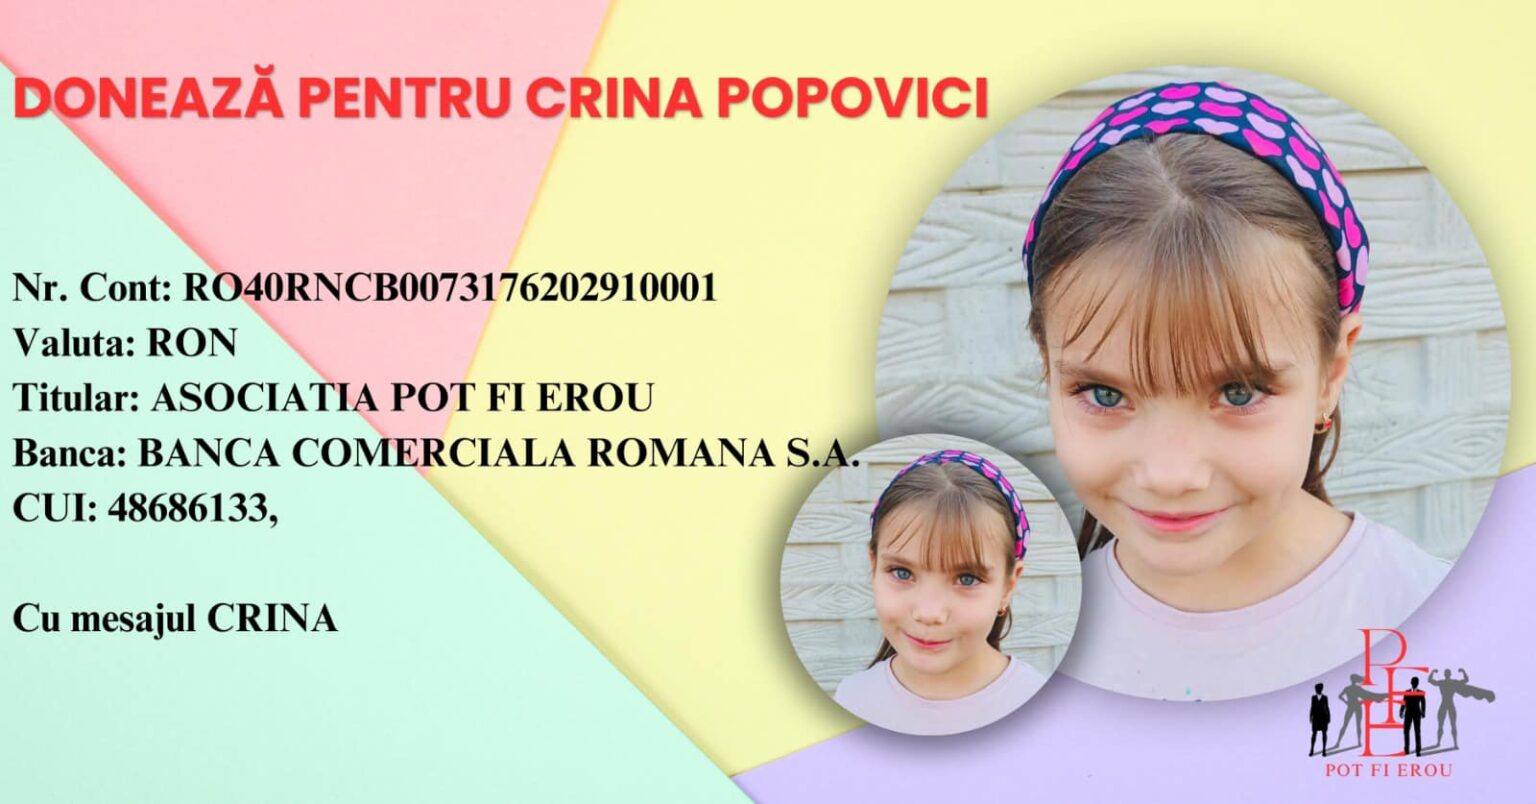 Apel umanitar pentru micuţa Crina Popovici care vrea să devină campioană mondială la înot